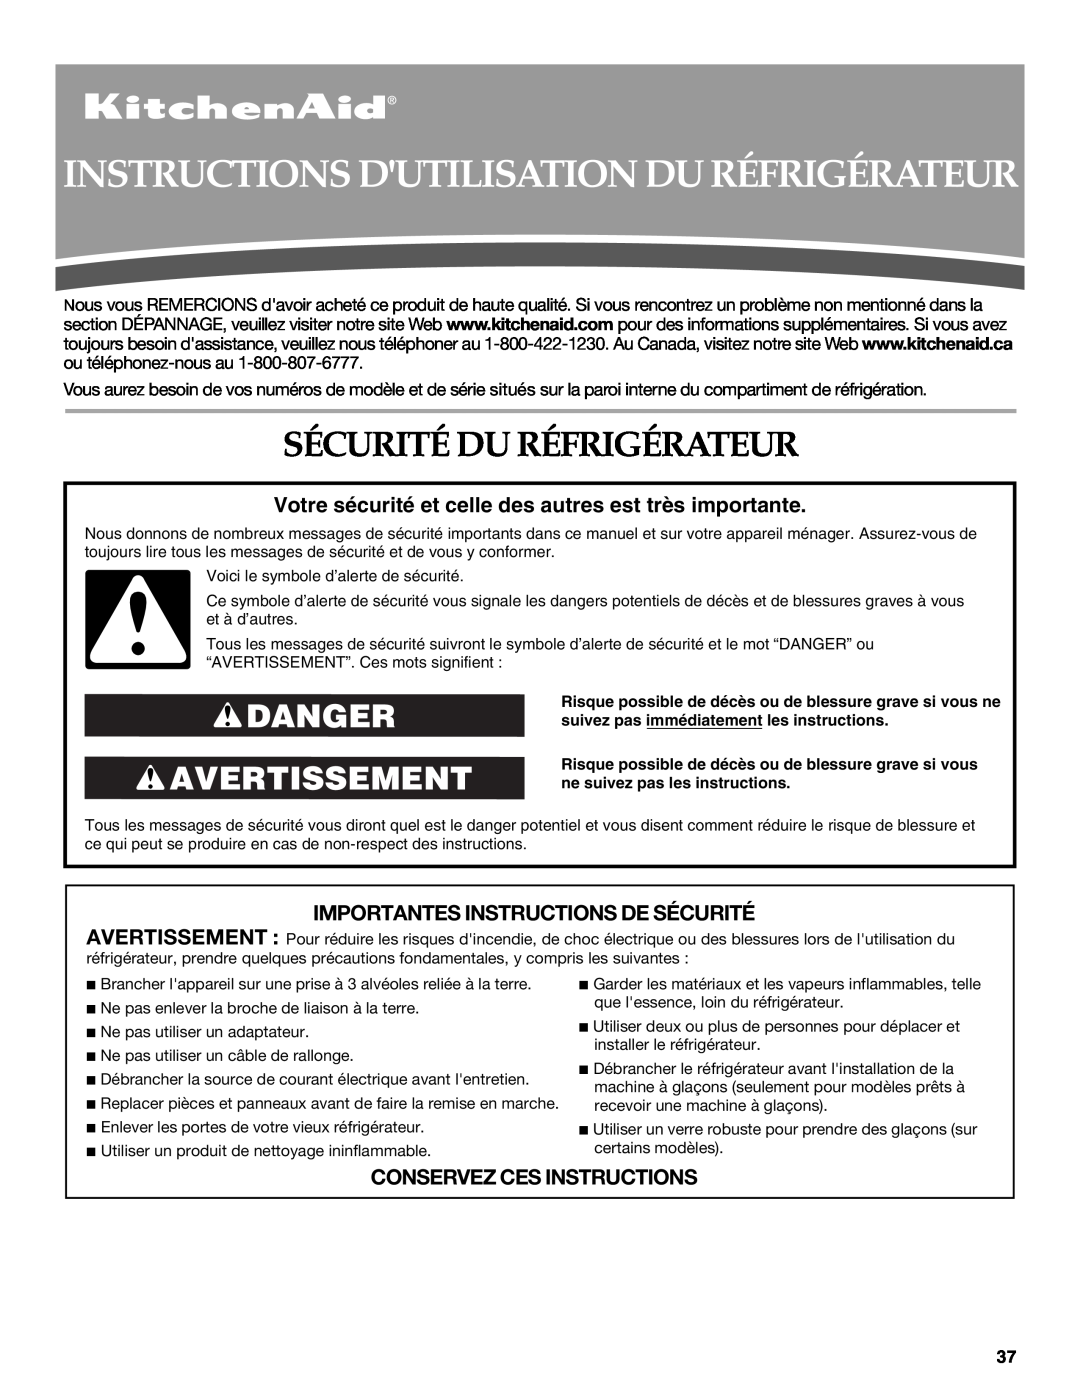 KitchenAid W10213162A Instructions Dutilisation Du Réfrigérateur, Sécurité Du Réfrigérateur, Danger Avertissement 